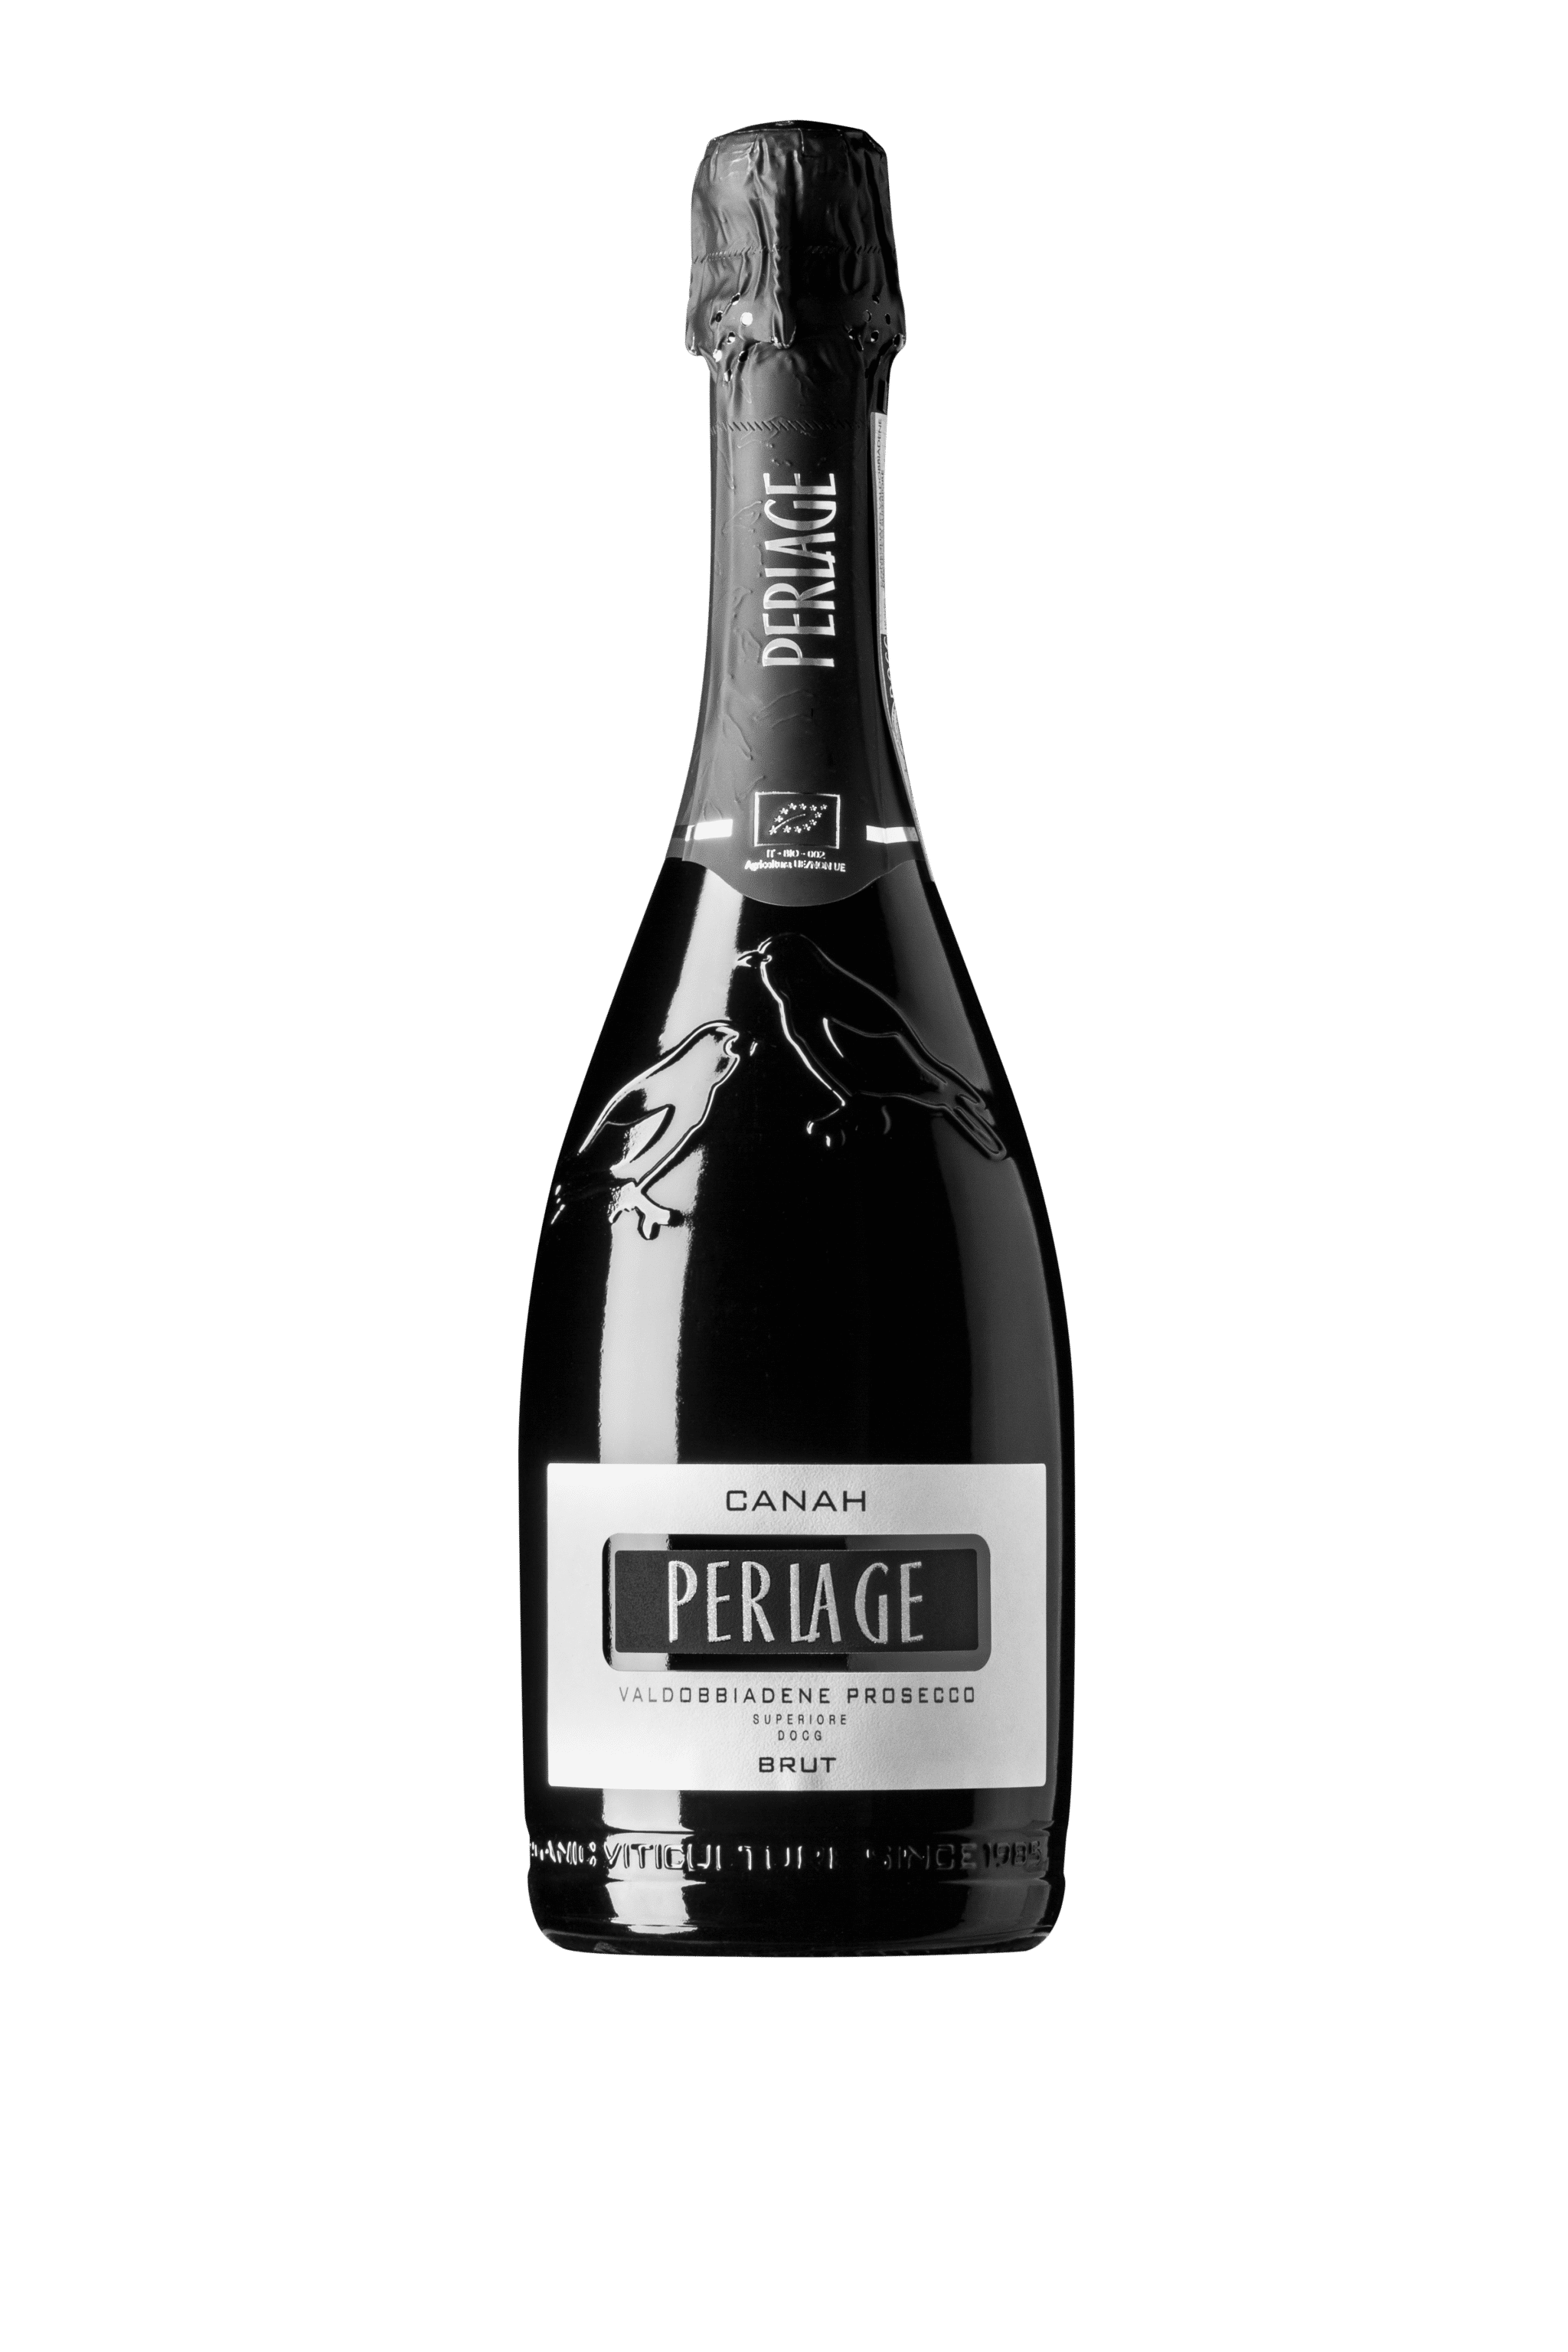 Perlage Prosecco “Canah” DOCG 750 ml 11,5 % vol Brut